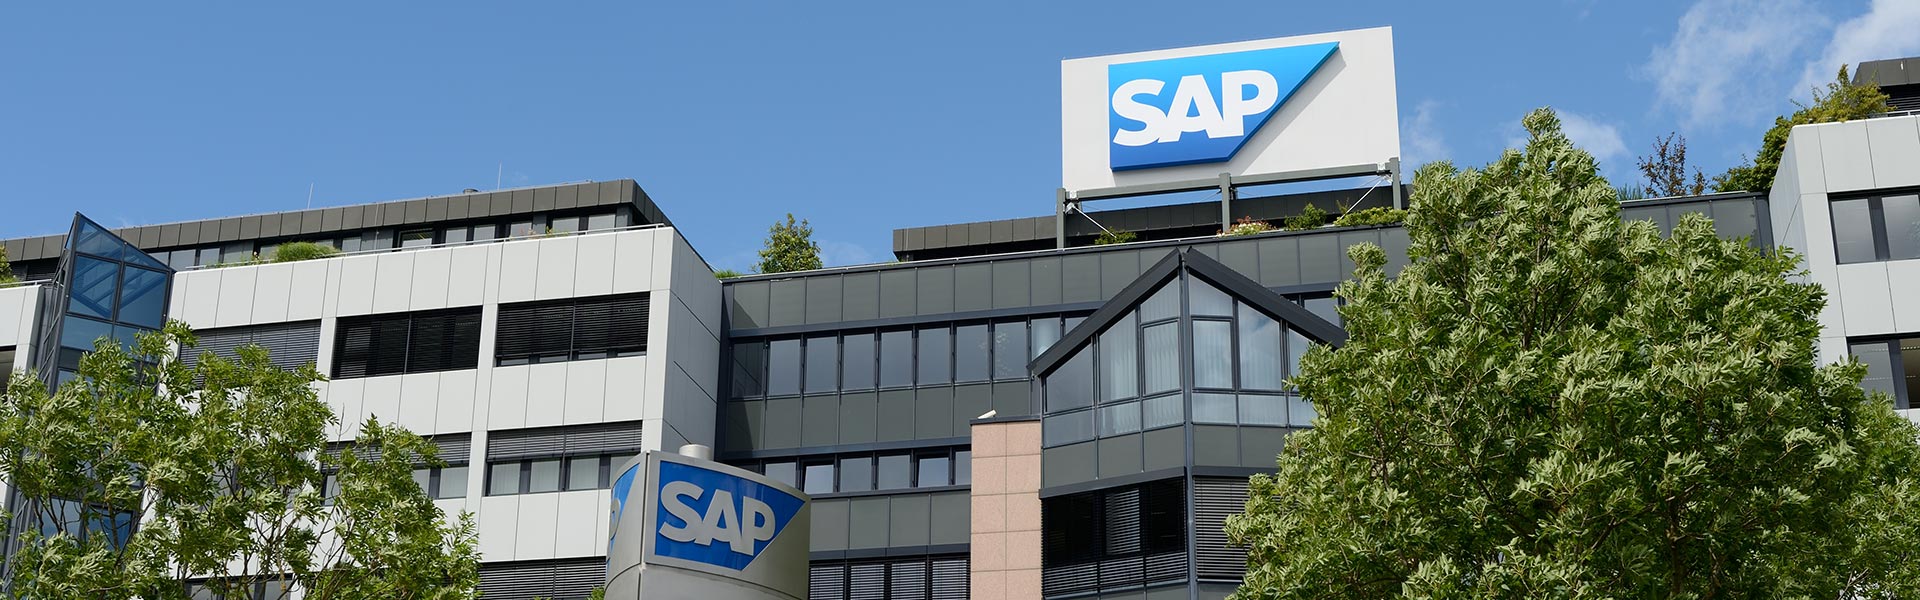 SAP lanza innovaciones para construir fuerzas de trabajo sostenibles y preparadas para el futuro